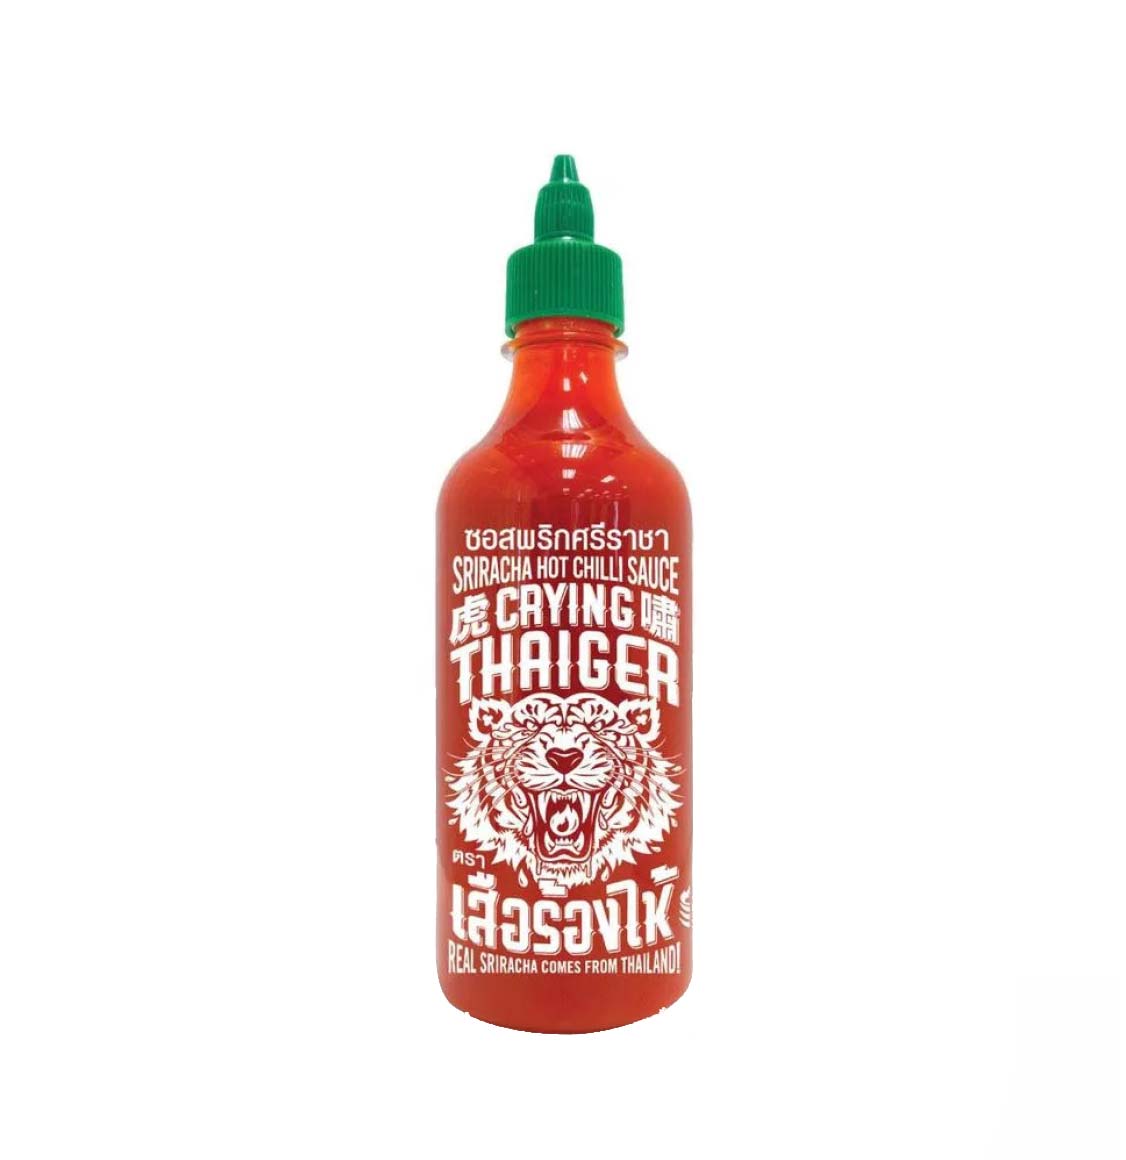 Crying Thaiger Sriracha Hot Chili Sauce Vegan 484g